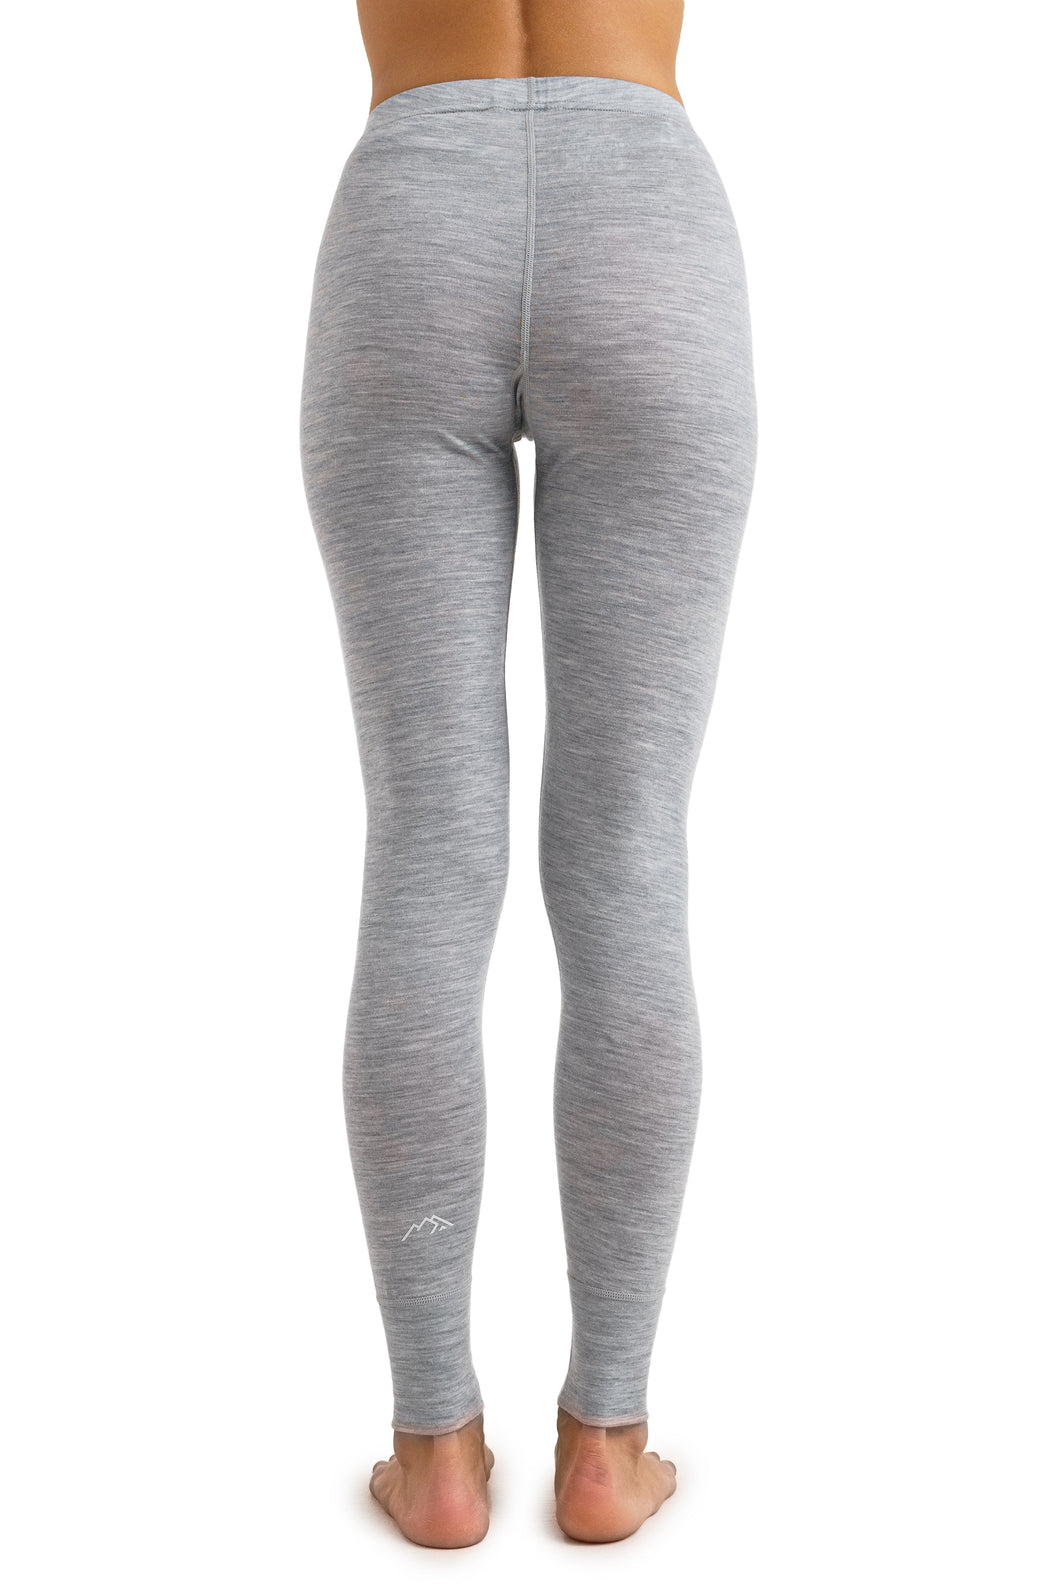 Women's Merino Pants 165 Heathered Grey